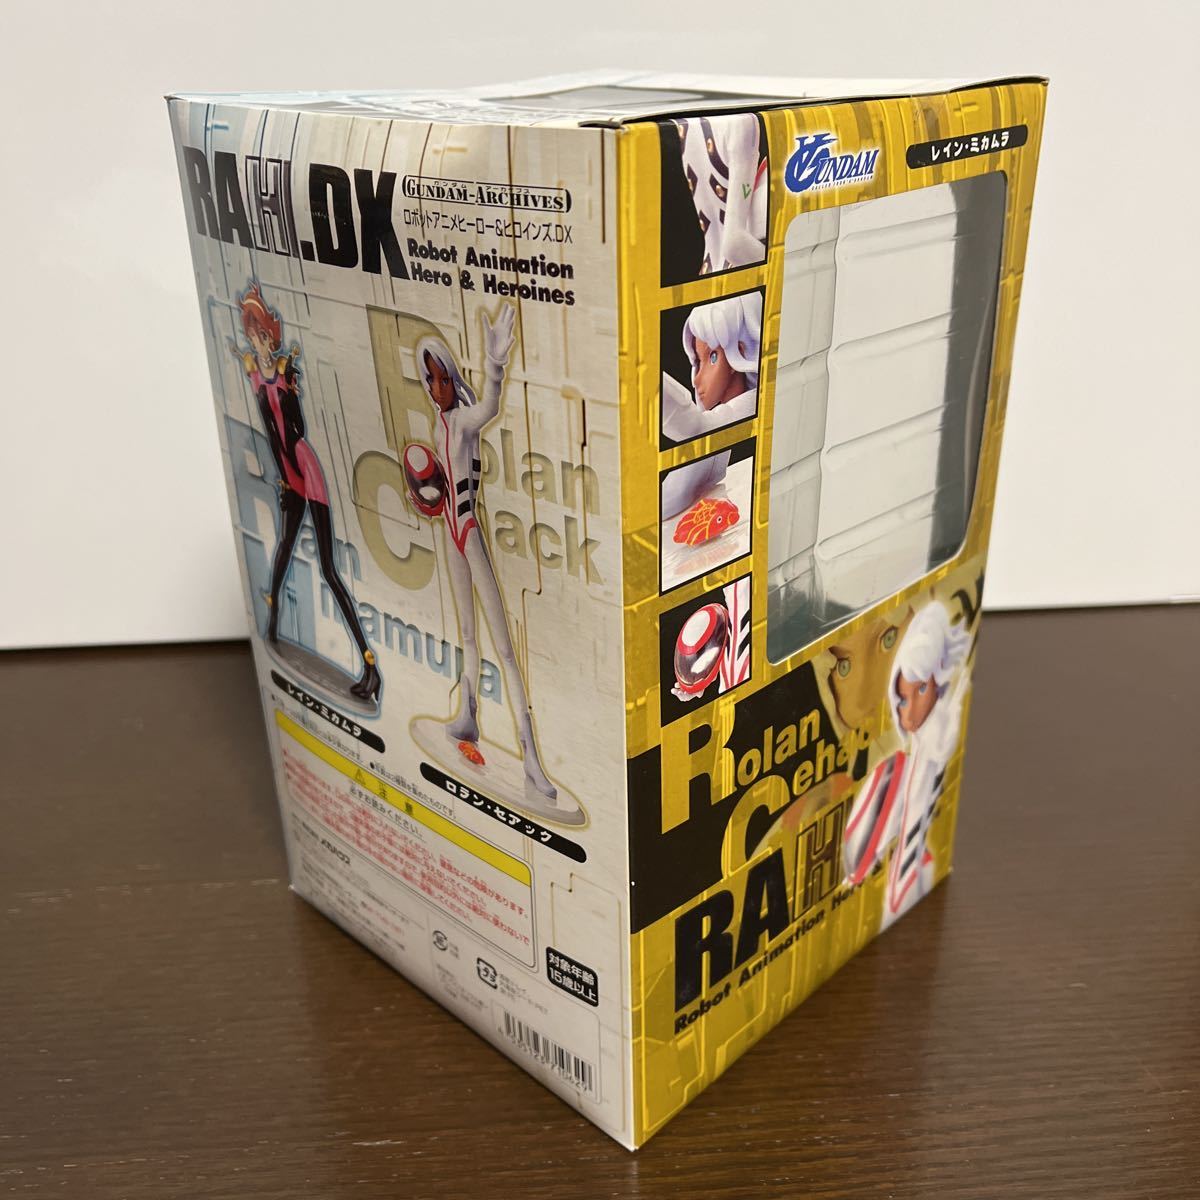 未使用 送料無料 エクセレントモデル RAH.DX ガンダムアーカイブス サイド1 RAHDX G.A.01 レインミカムラ 1/8 メガハウス  フィギュア 2006